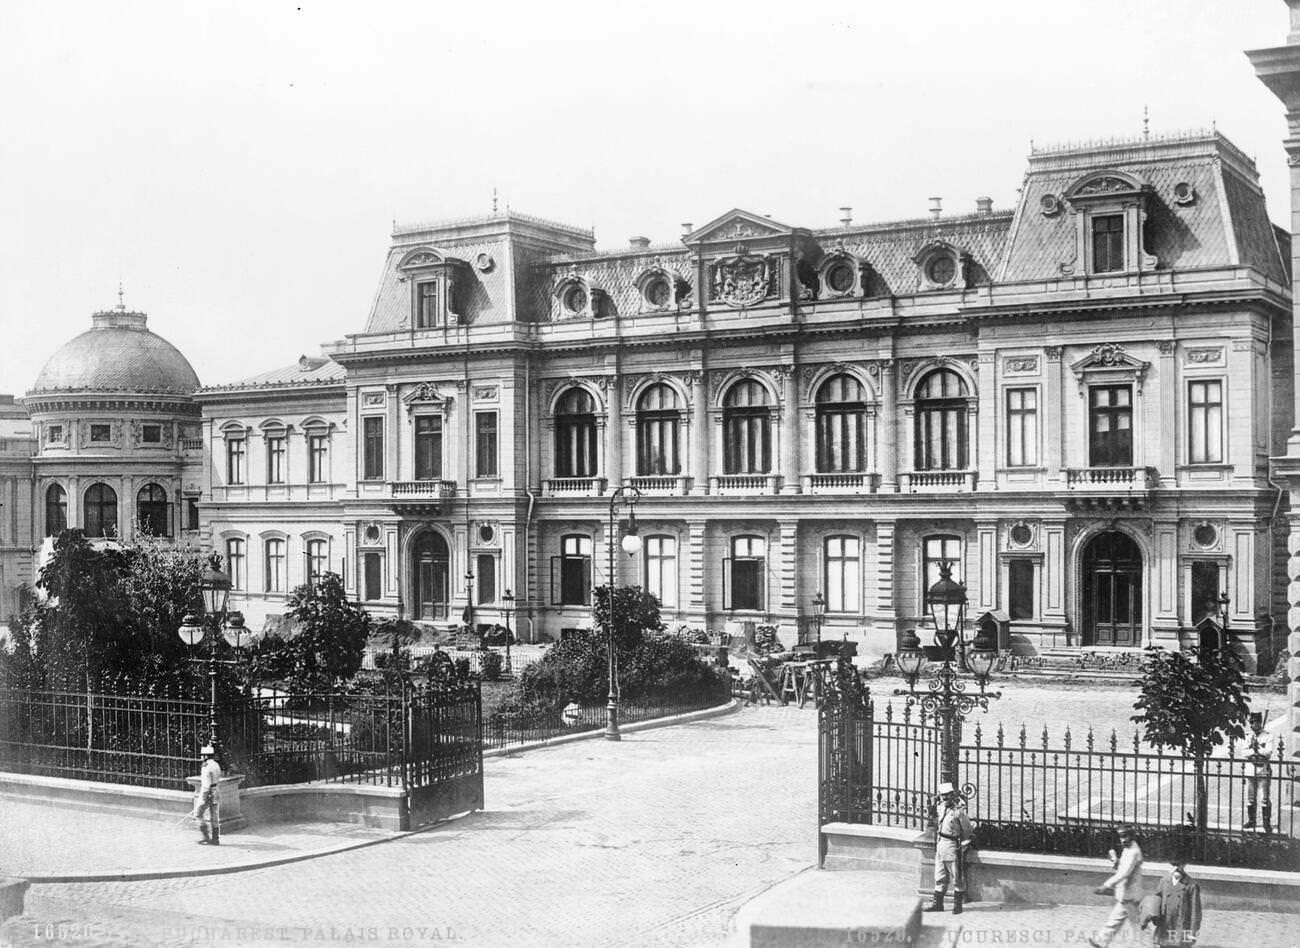 The royal palace, 1926